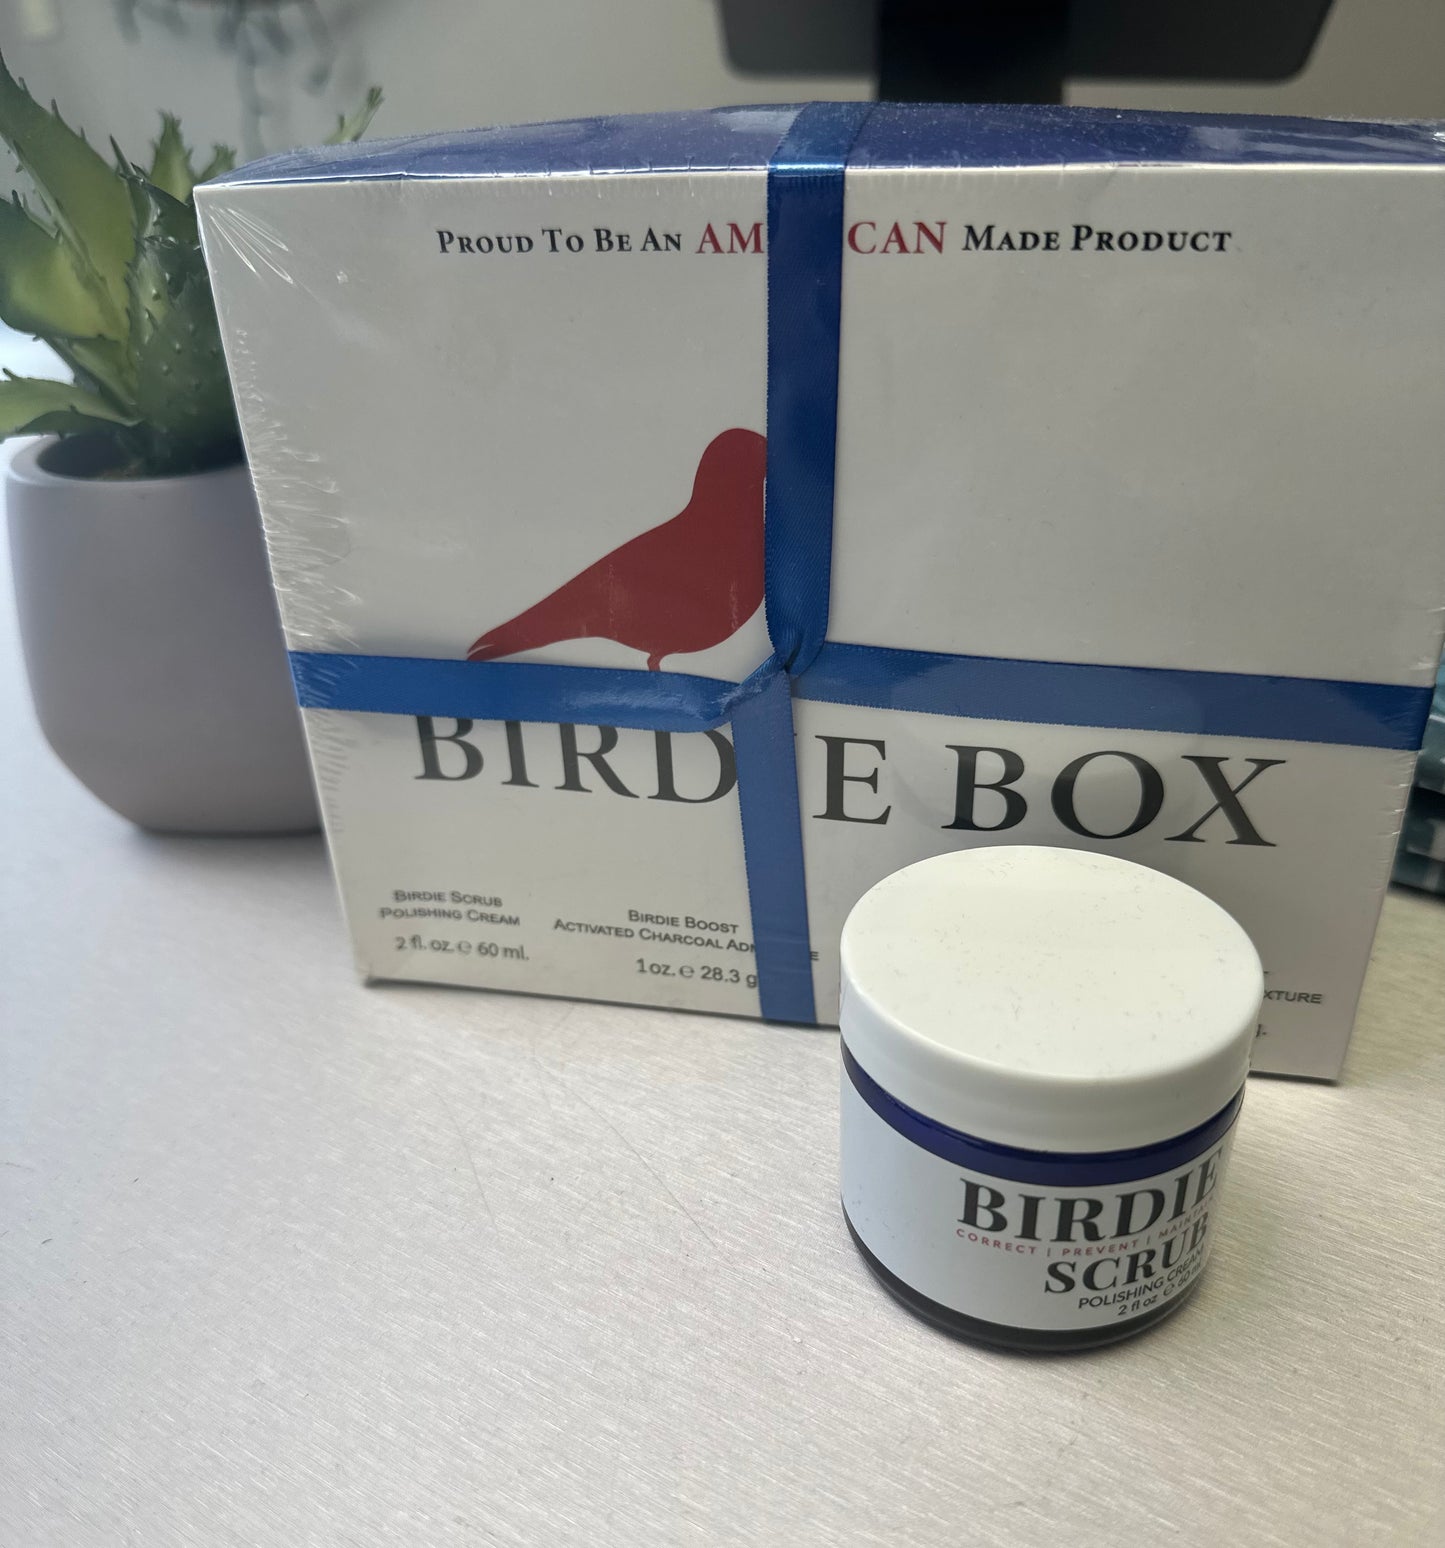 Birdie Box Scrub